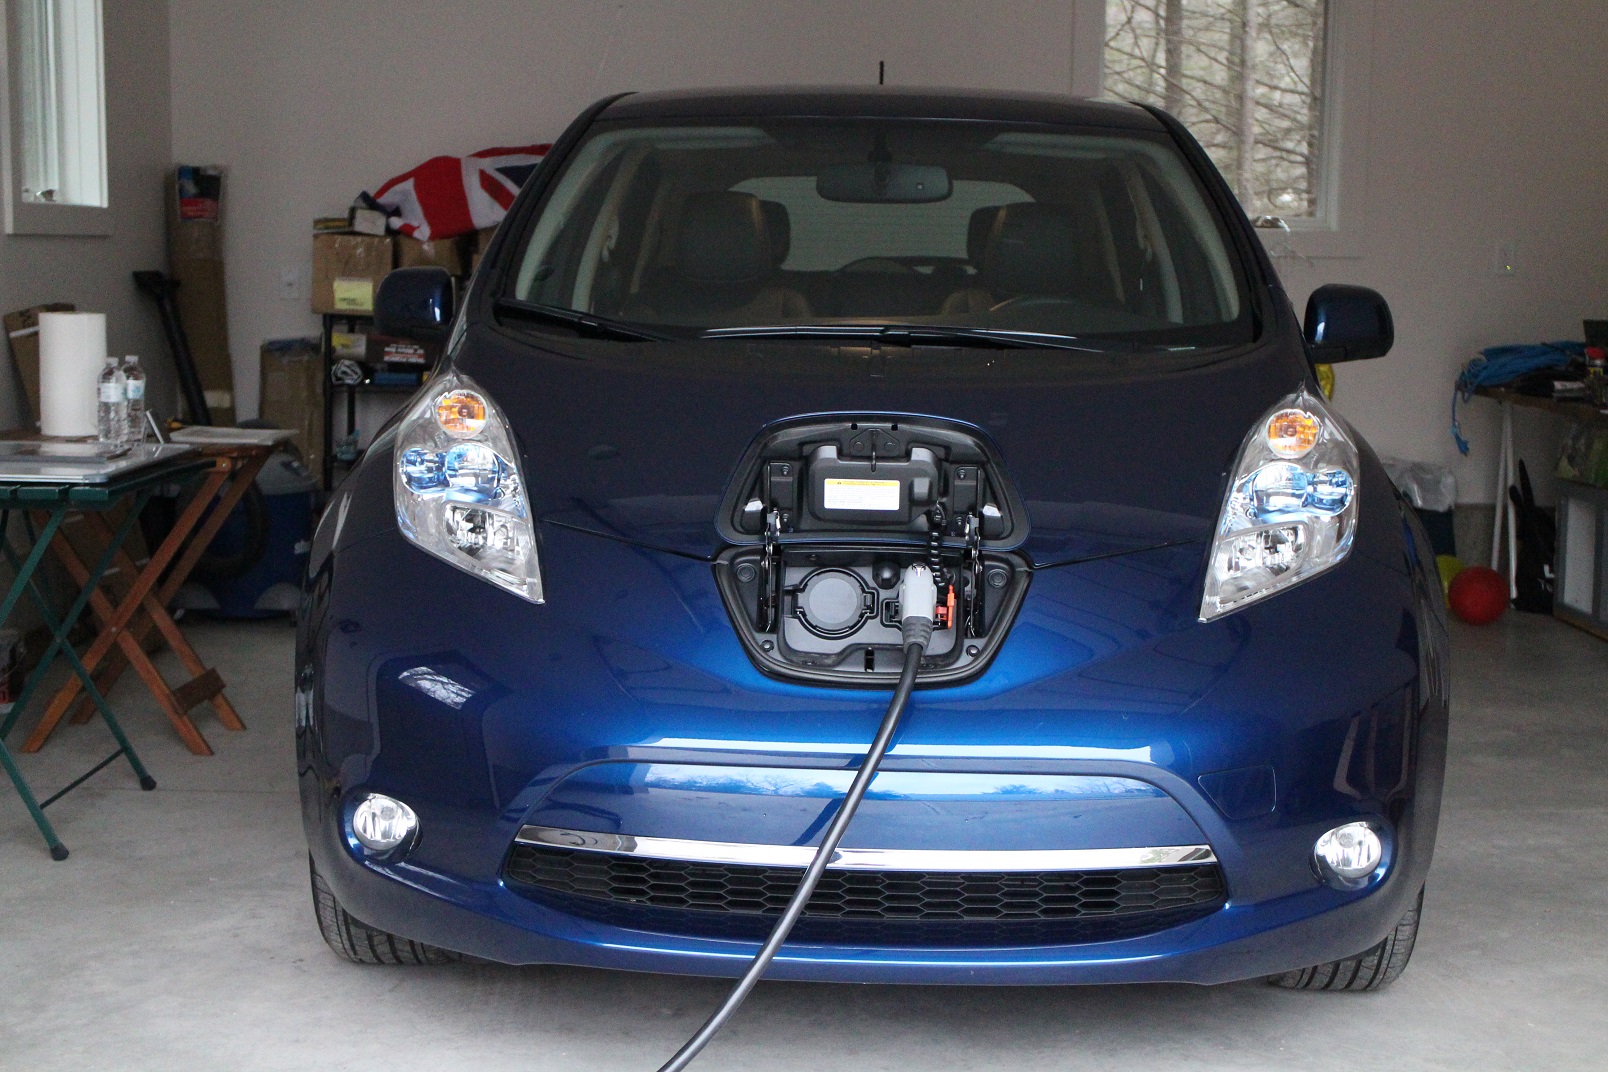  CCS, VW TDI Fix Rejected, Electric-Car Tax Credits: Today's Car News